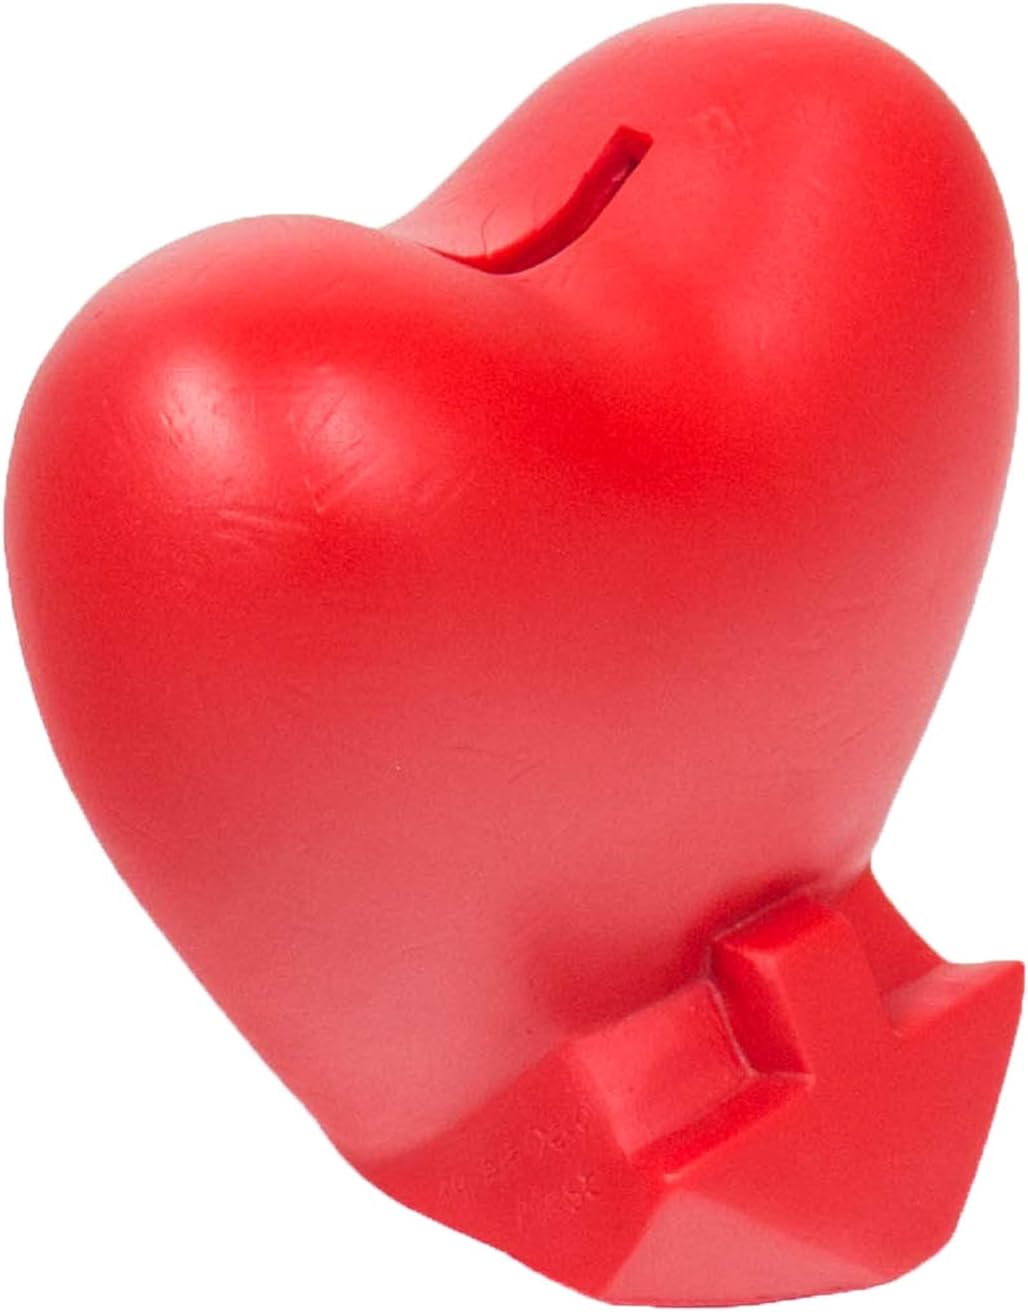 HMF Spardose Herz mit Schlüssel rot Sparbüchse